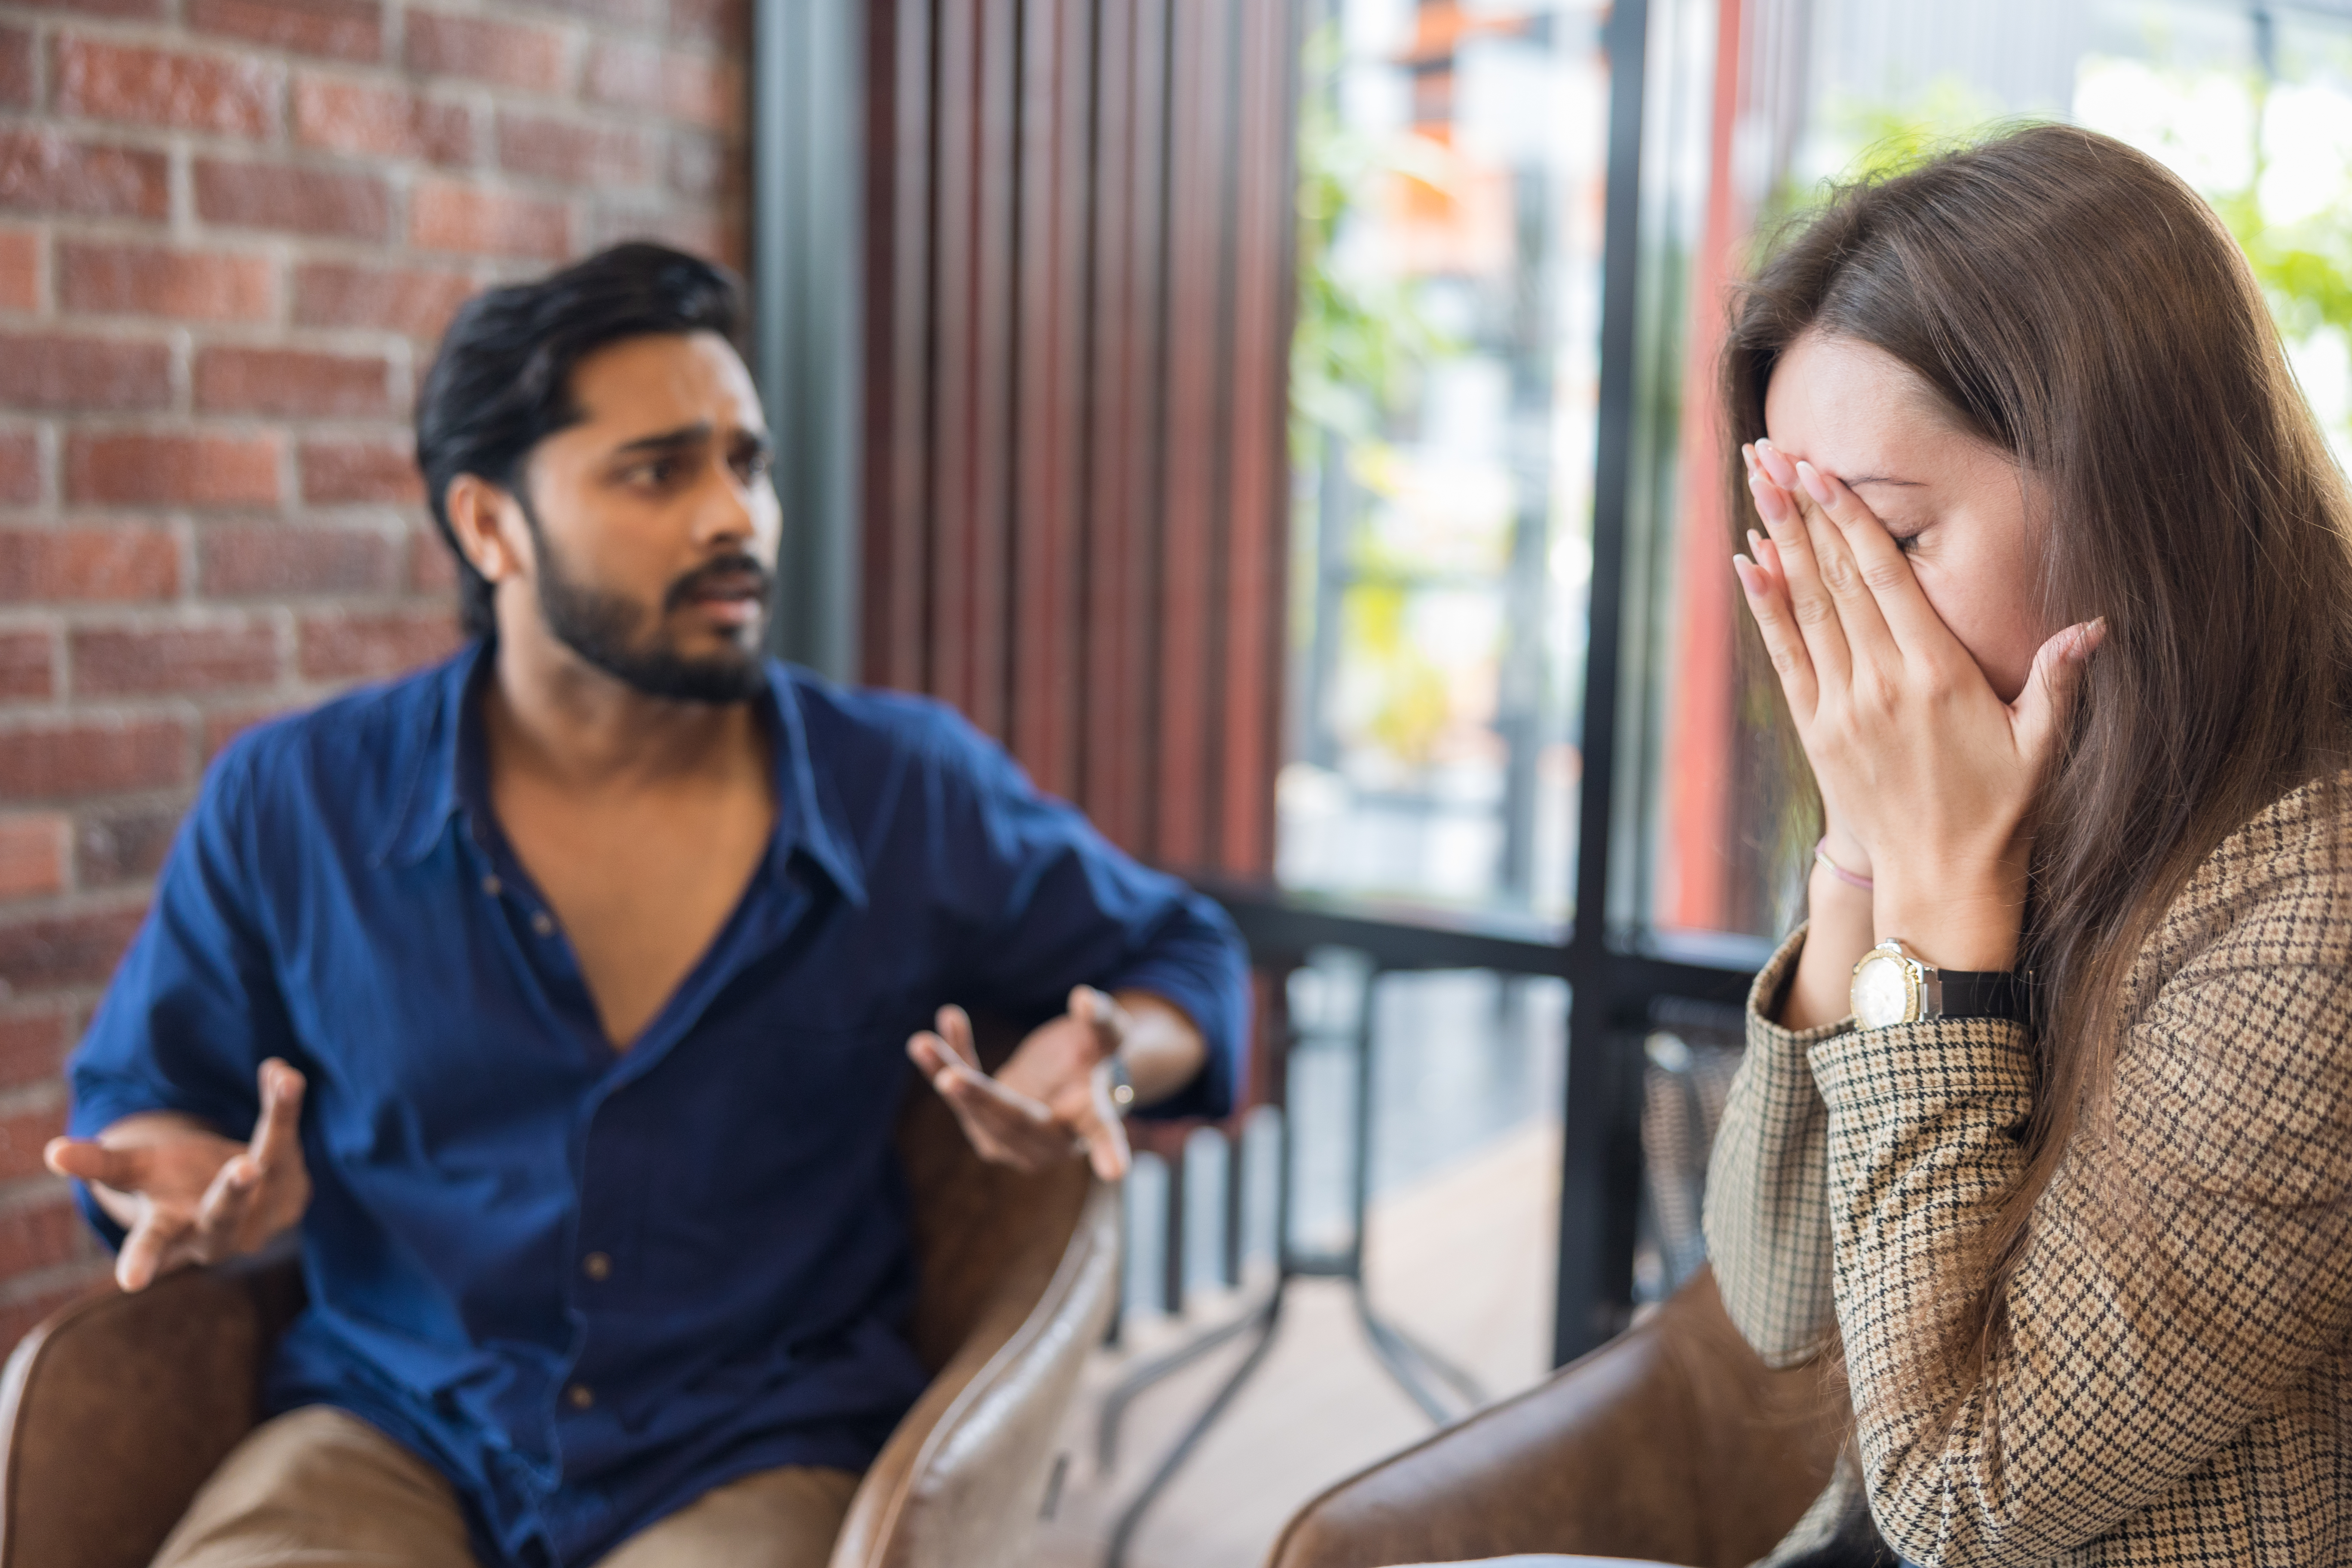 Un hombre y una mujer manteniendo una acalorada conversación | Fuente: Getty Images